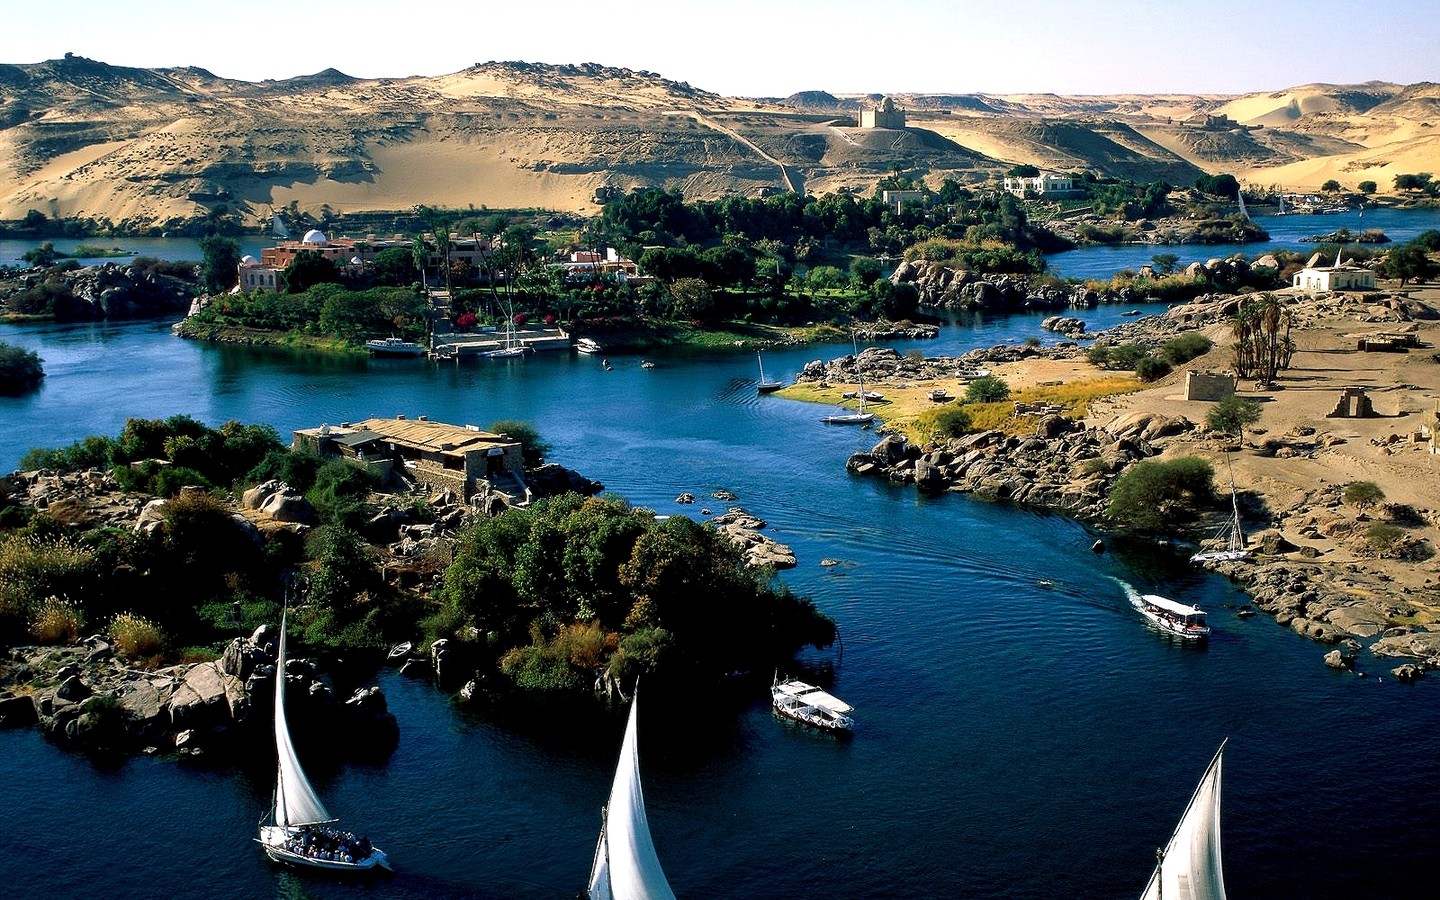 General 1440x900 landscape river boat Nile Egypt vehicle